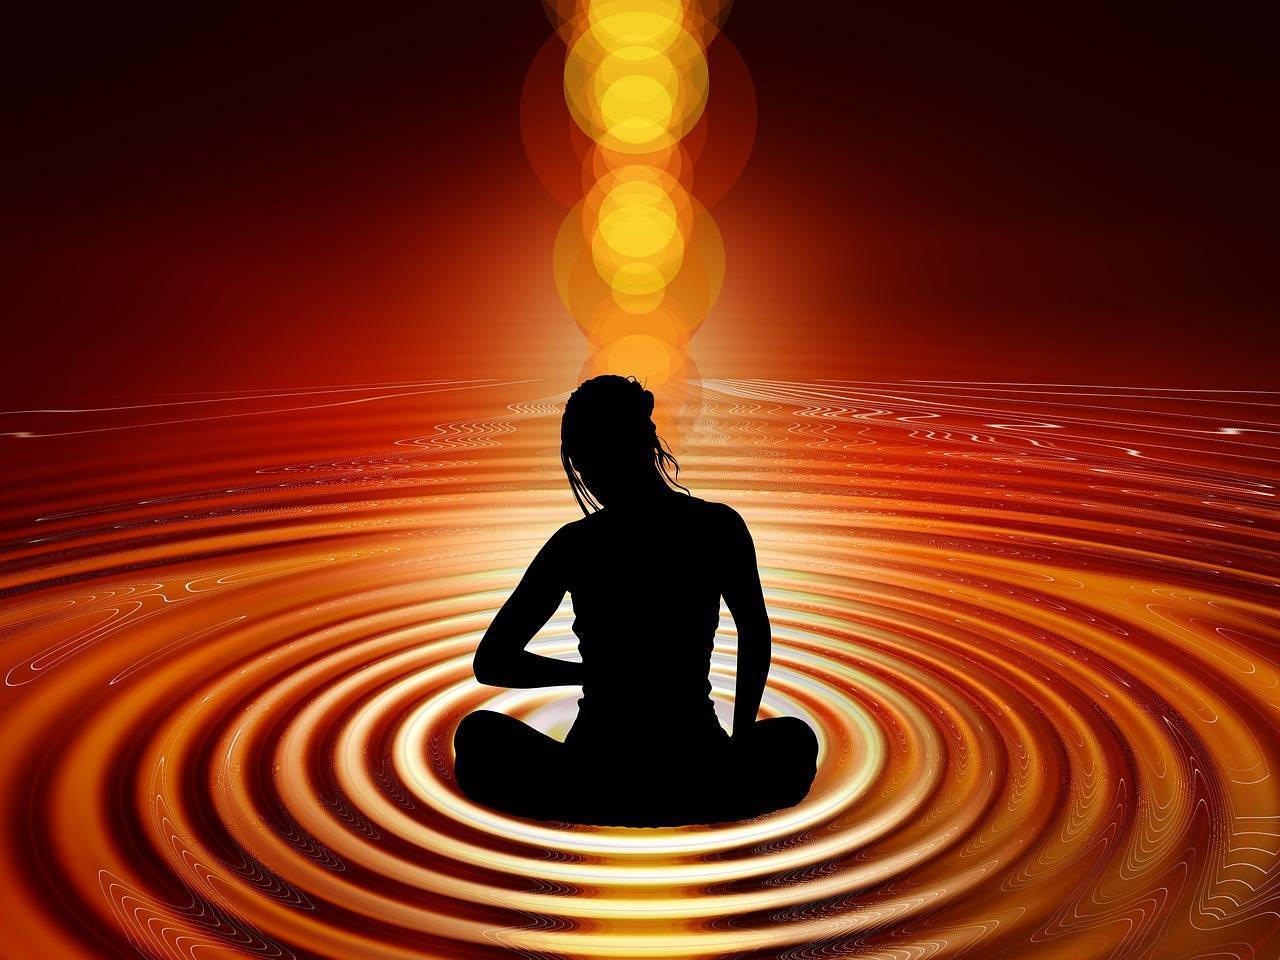 Медитация с великой мантрой “ОМ” – эффективная техника для достижения гармонии